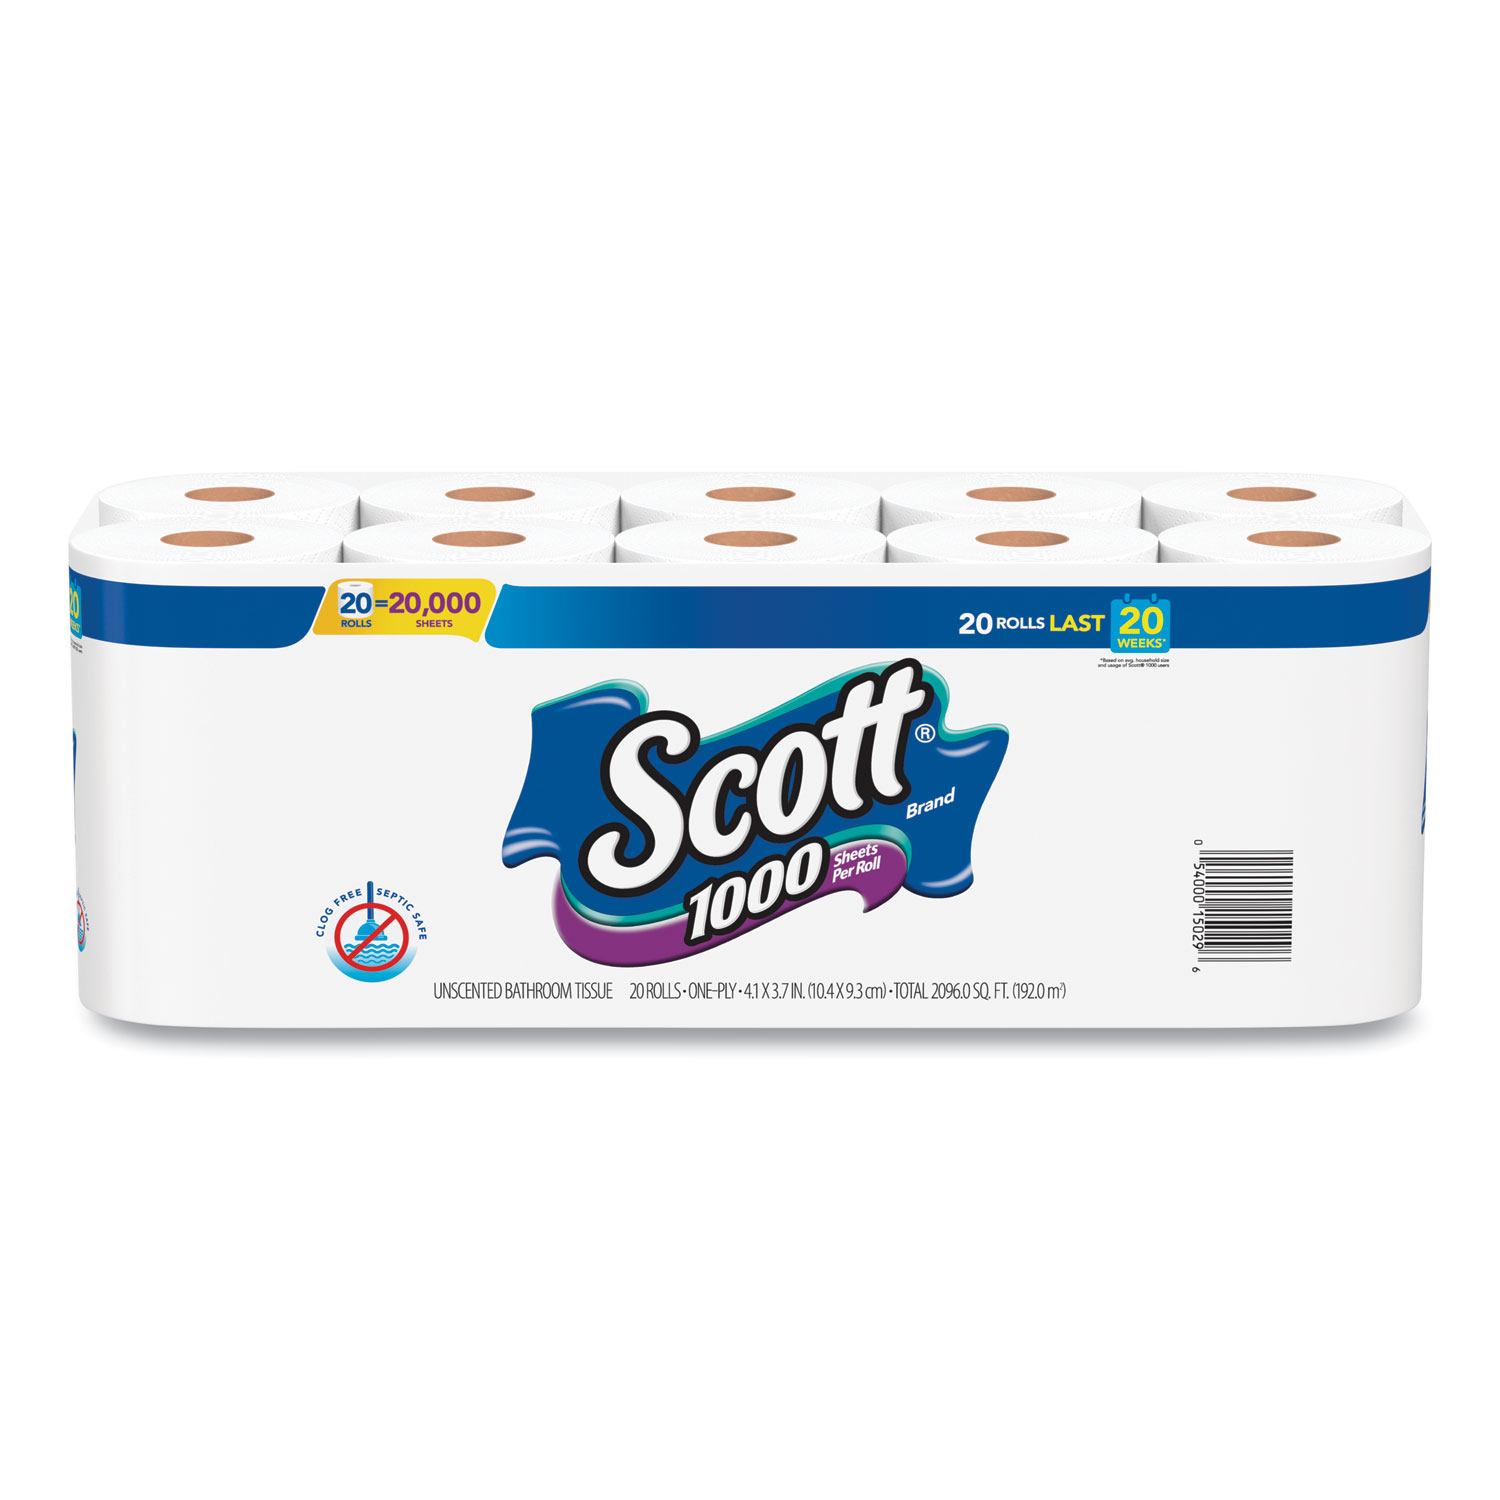  Scott 20032 1000 Bathroom Tissue, Septic Safe, 1-Ply, White, 1000 Sheet/Roll, 20/Pack (KCC20032) 